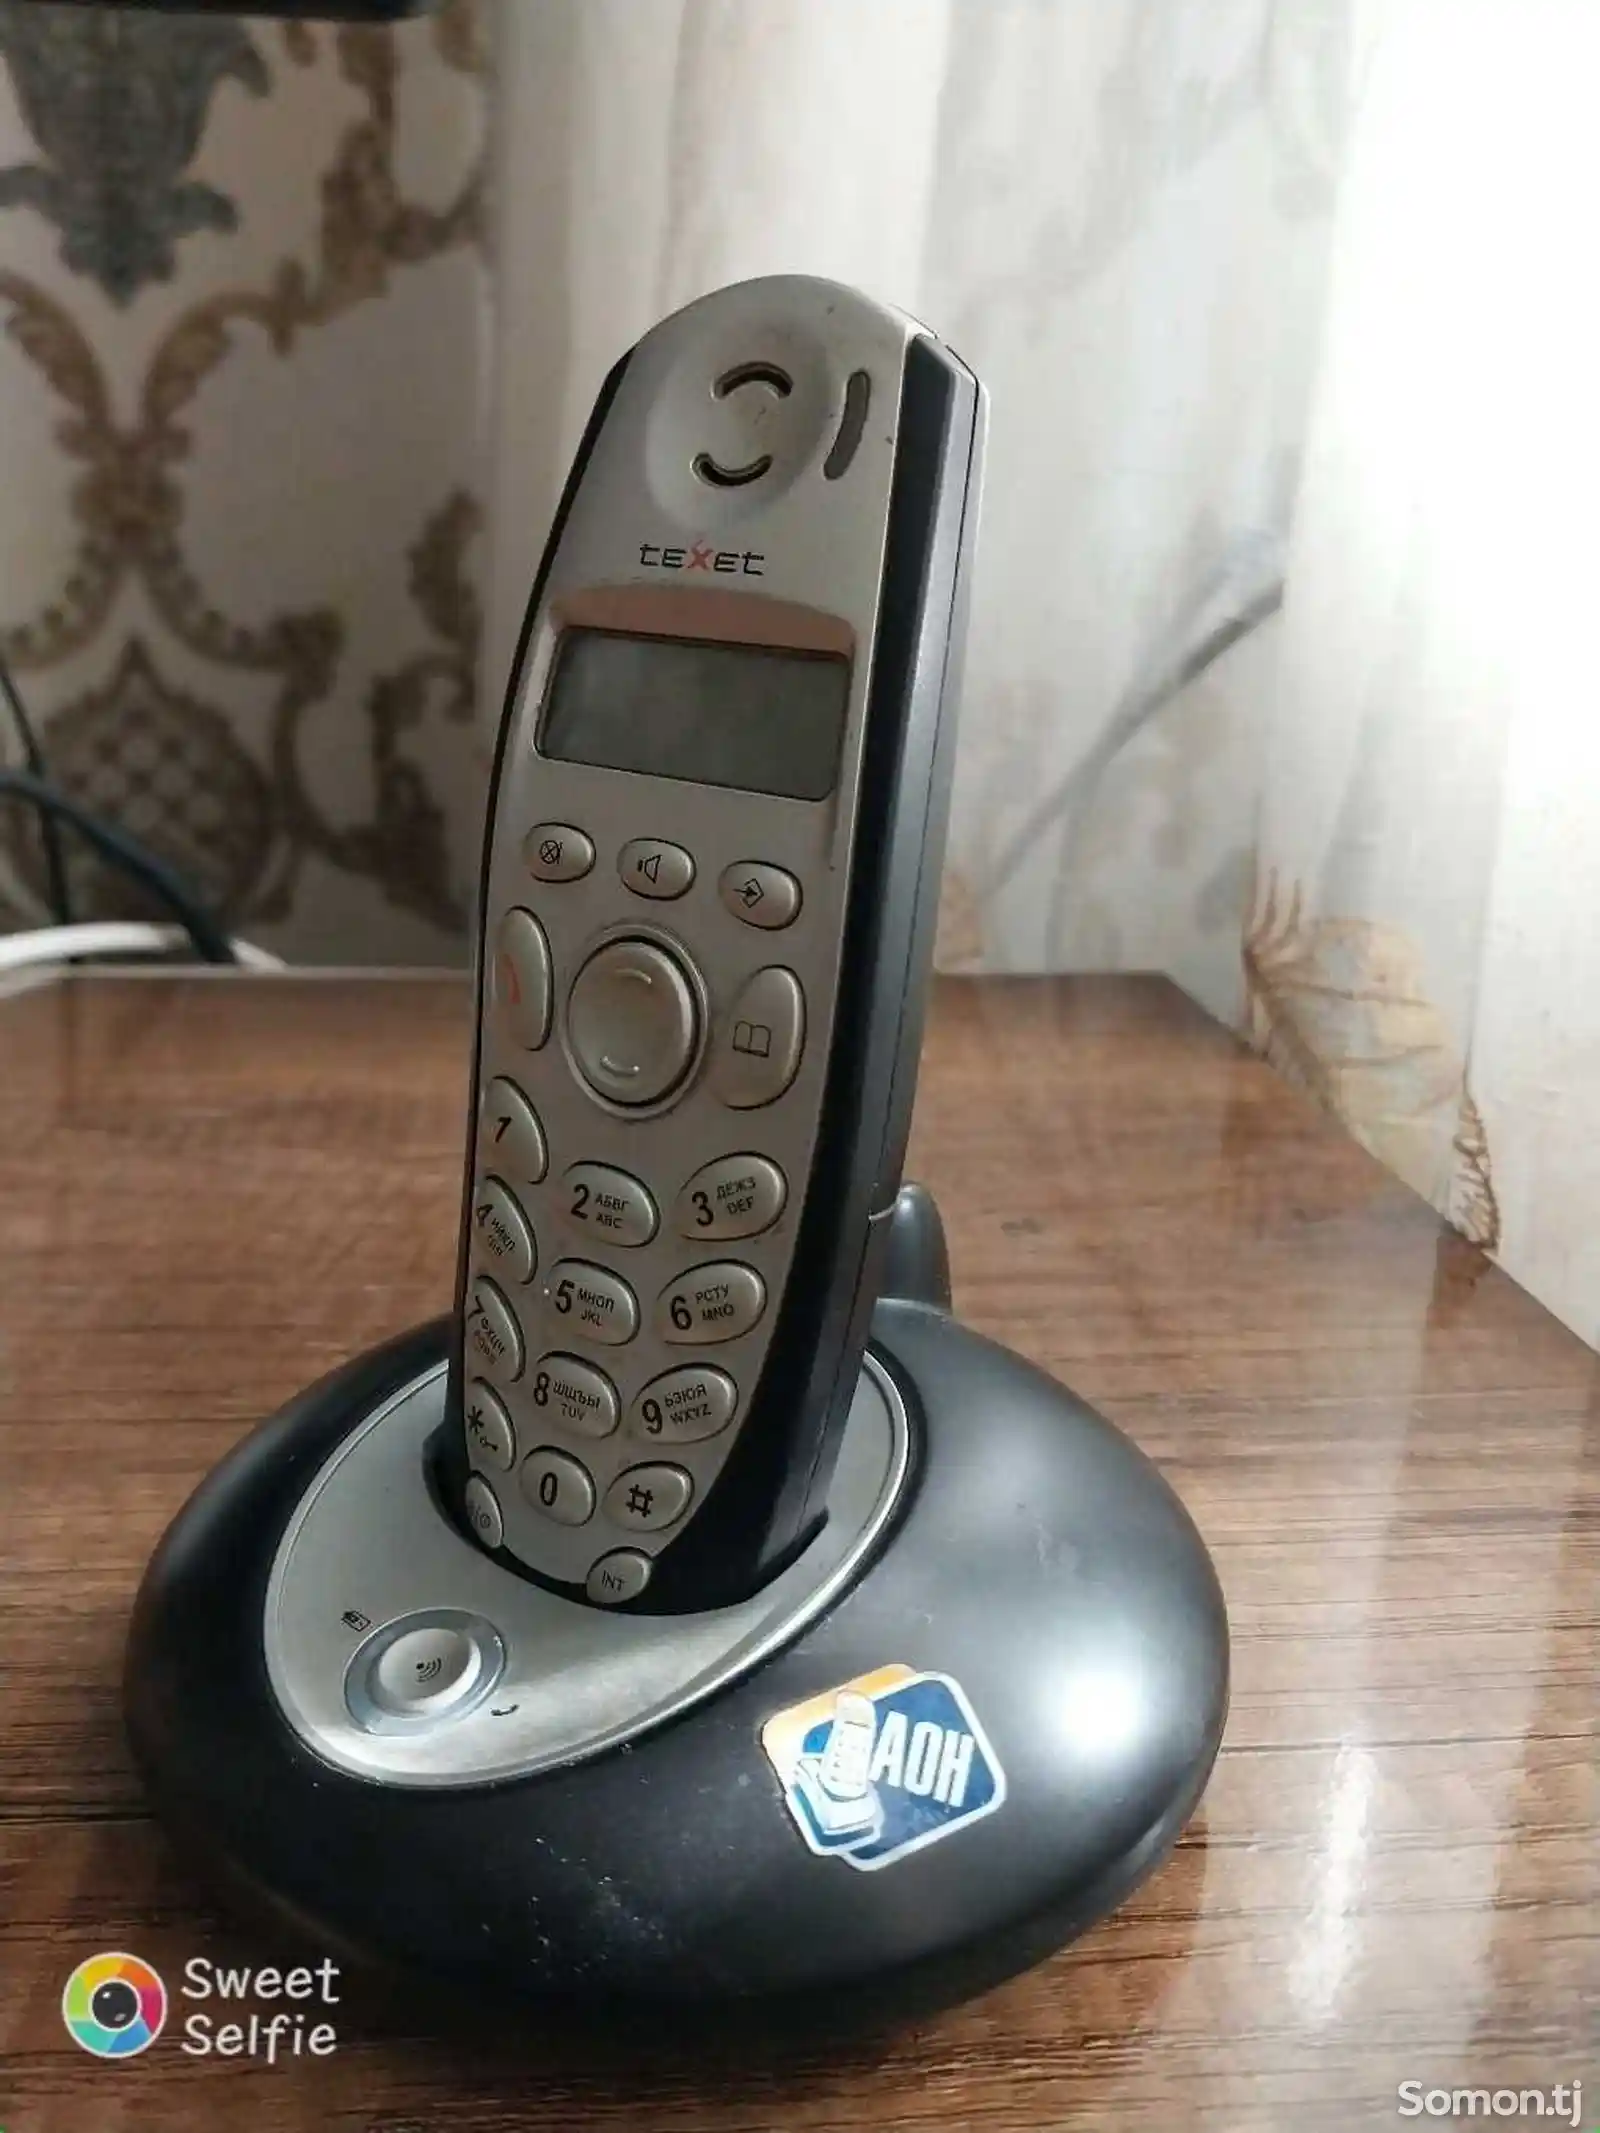 Беспроводной телефон Tехеt-1